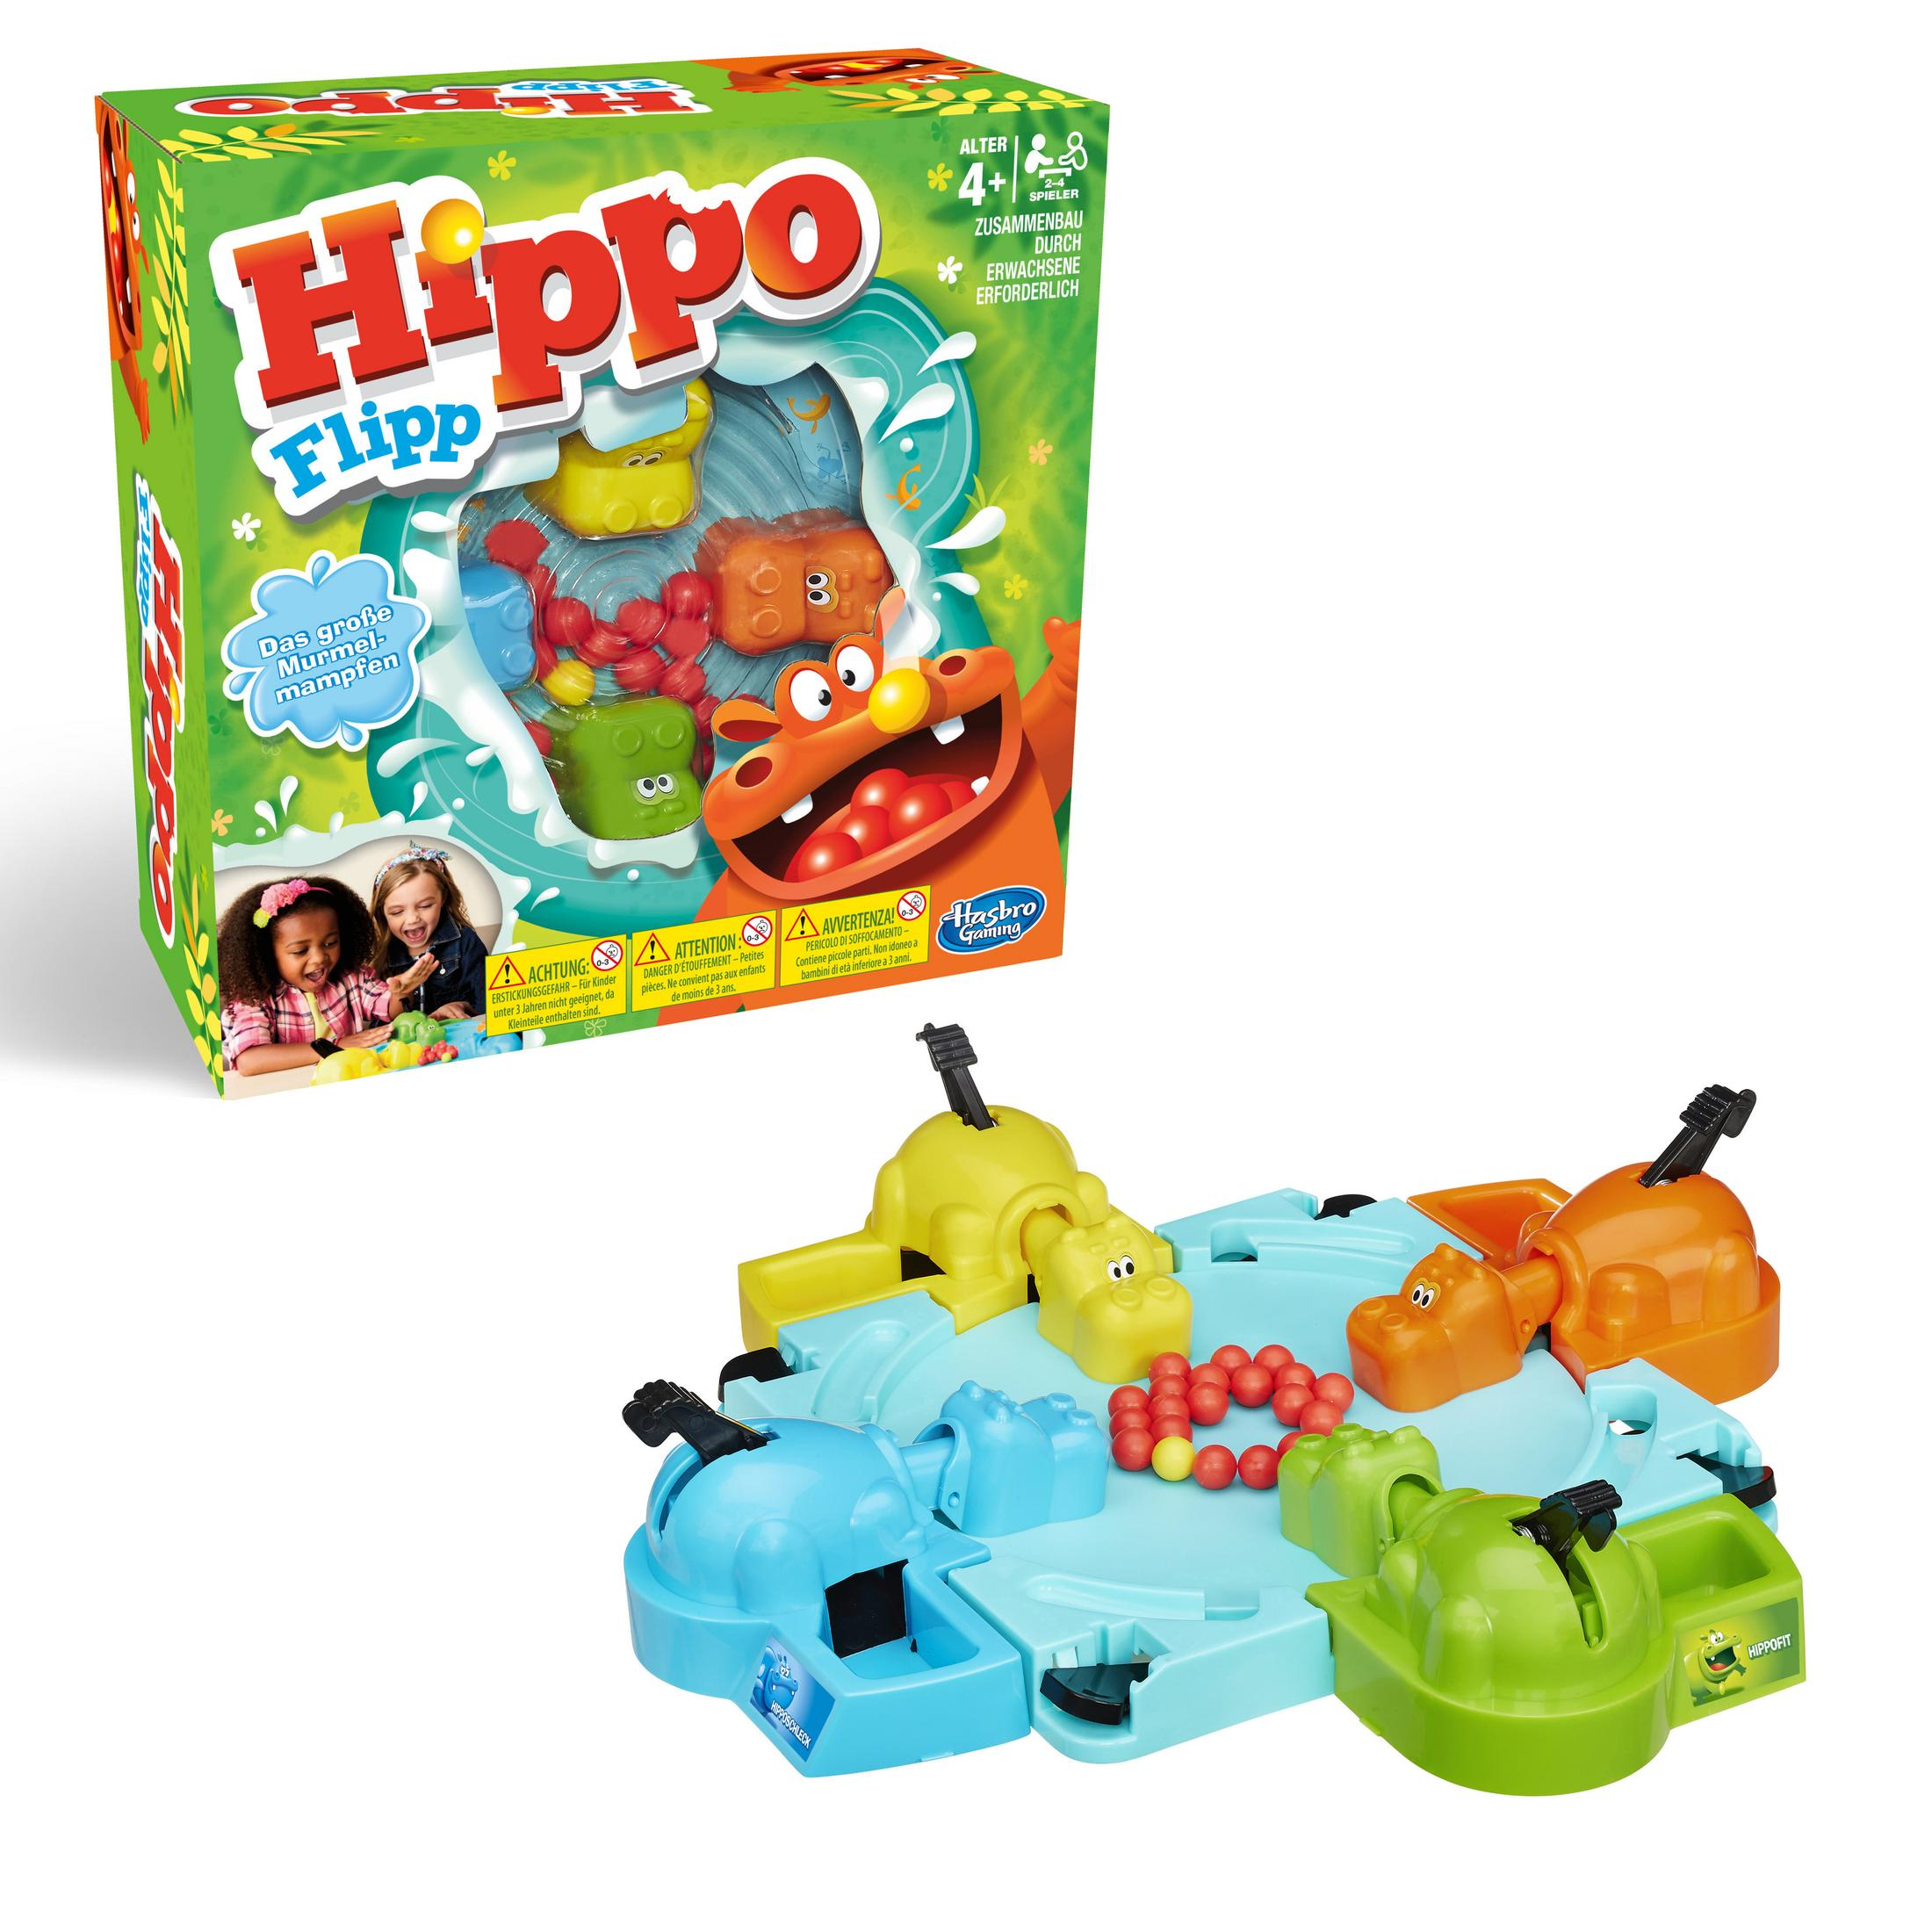 HIPPO GAMING FLIPP 98936398 Gesellschaftsspiel HASBRO